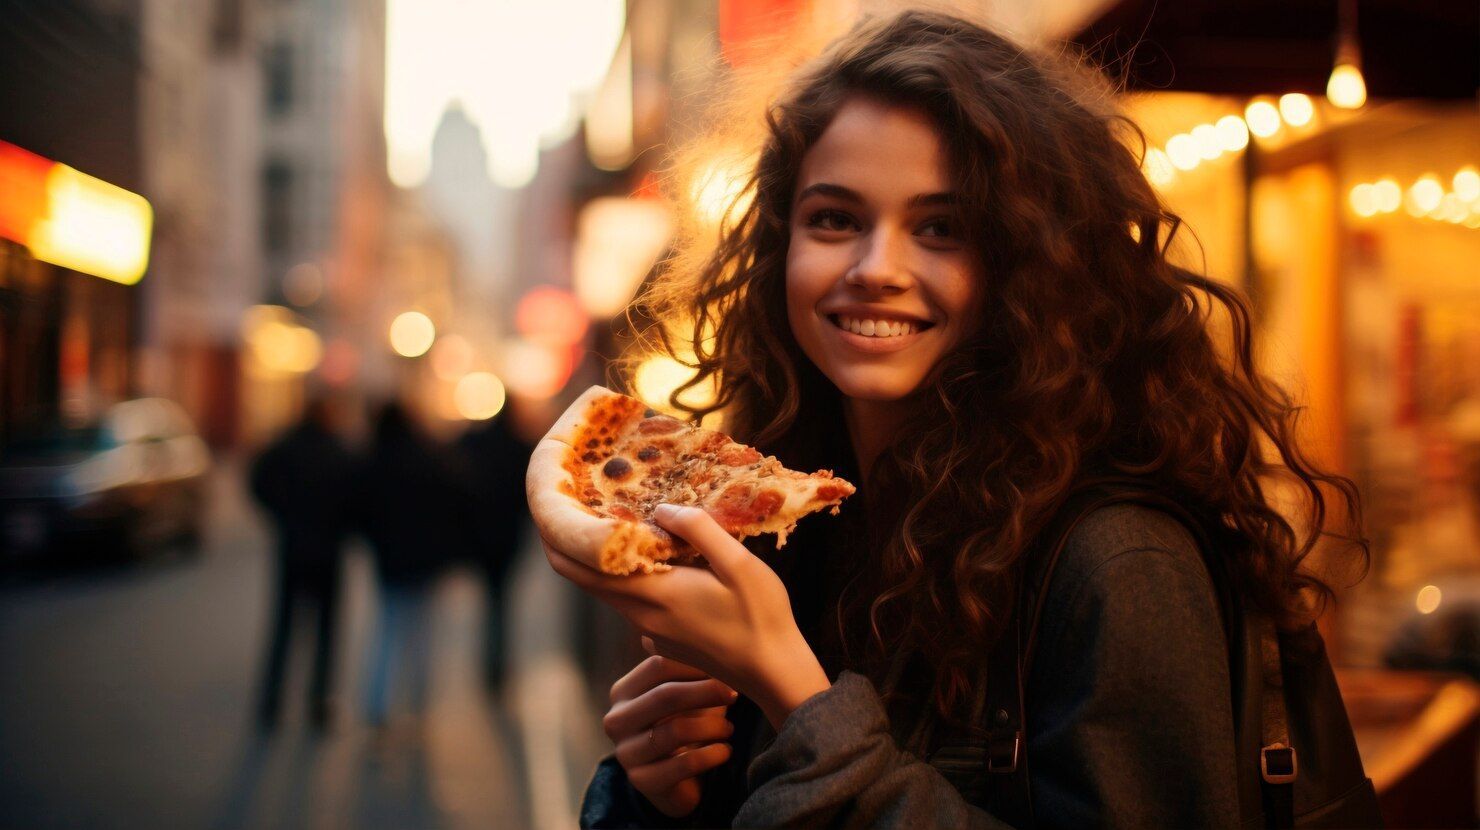 "Ik voel me s*ksueel aangetrokken tot pizza. Maar ik heb geen flauw idee waarom het me opwindt"